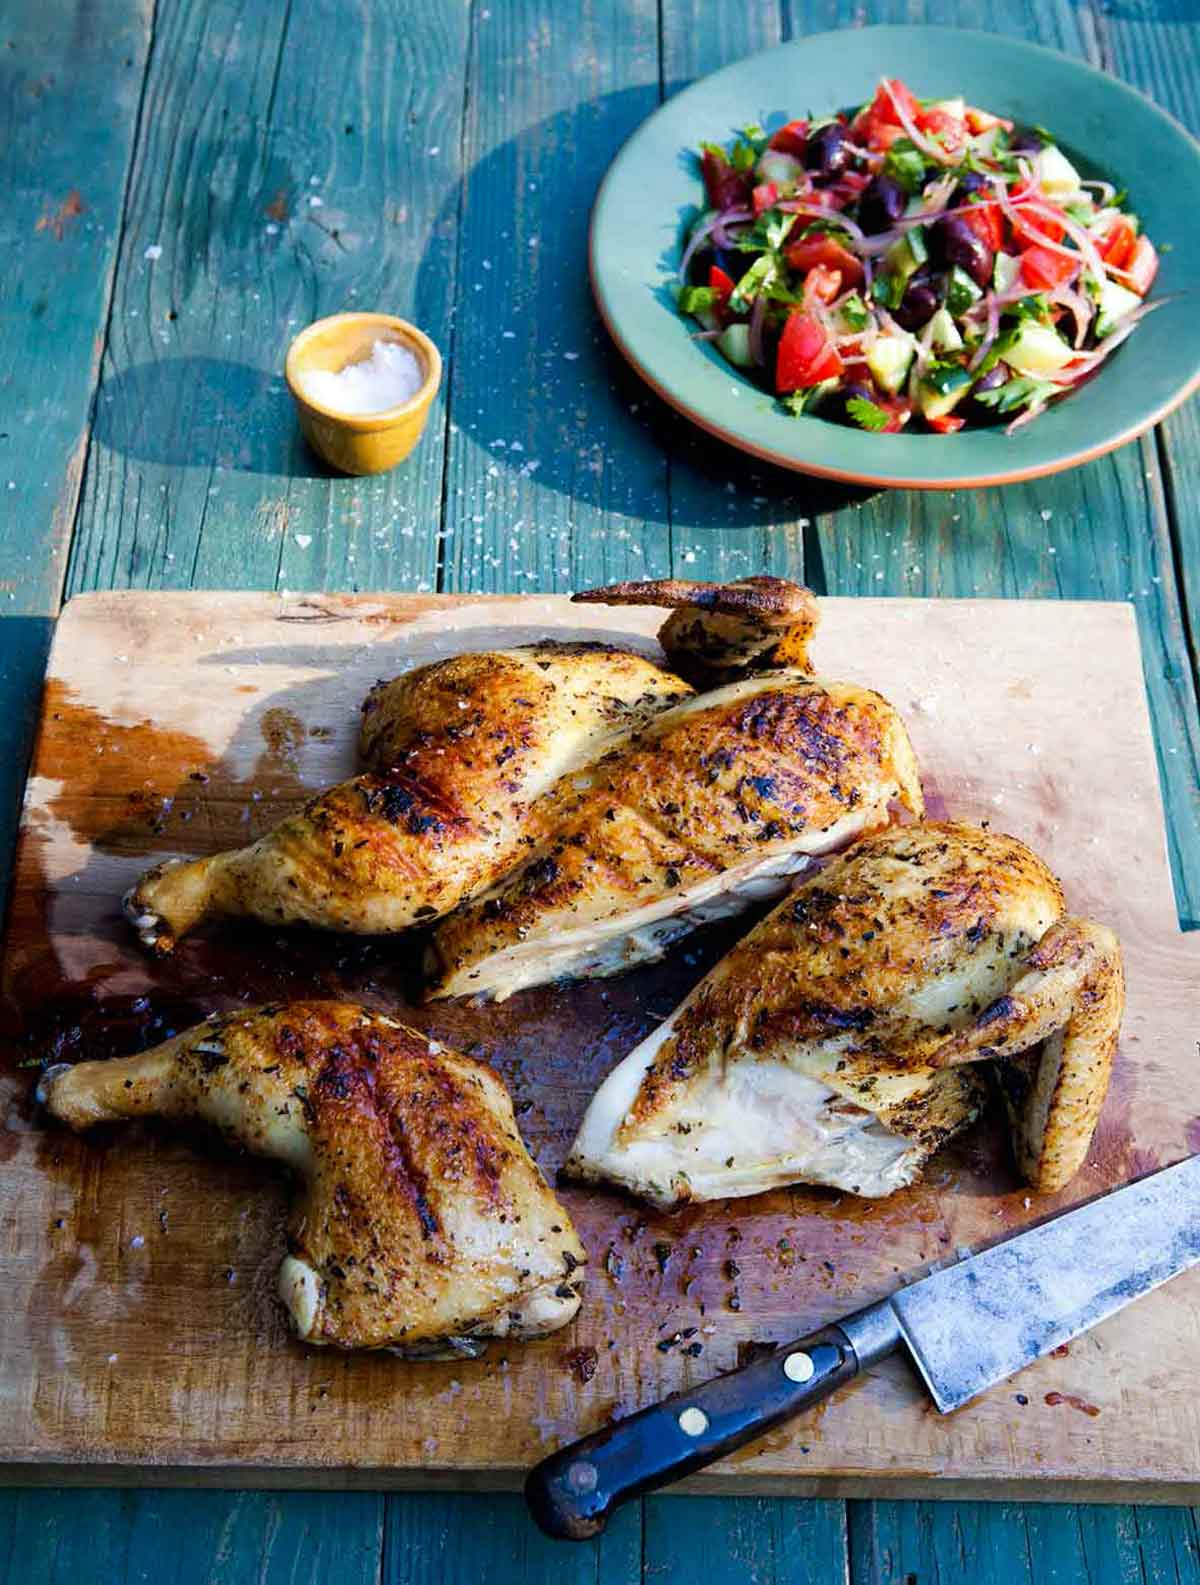 En skärbräda i trä med en snidad grillad grekisk kyckling och en kniv vilande bredvid.